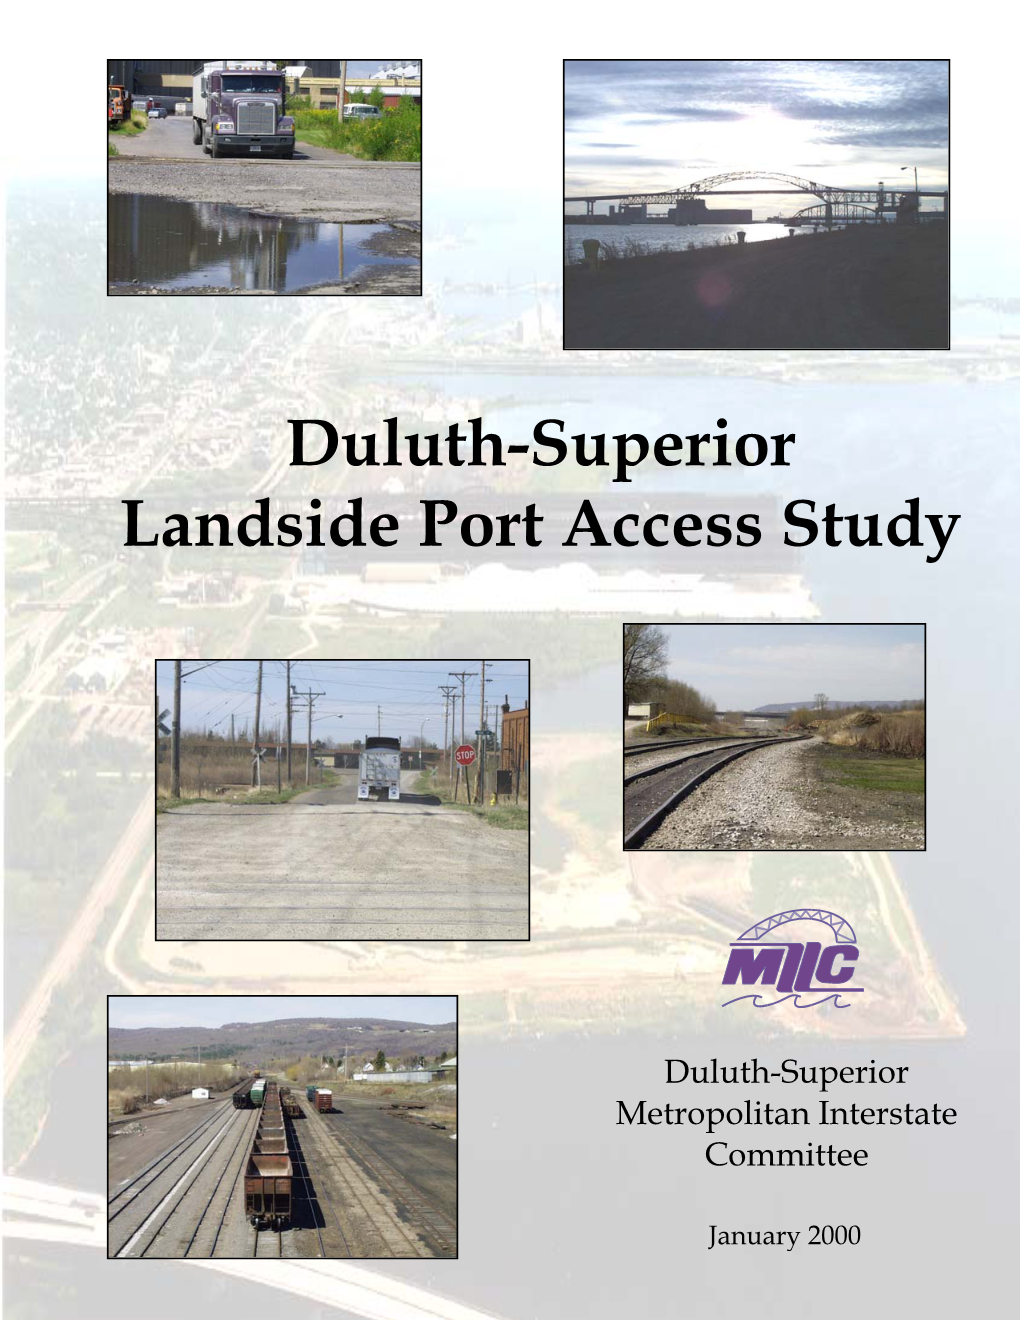 Duluth-Superior Landside Port Access Study